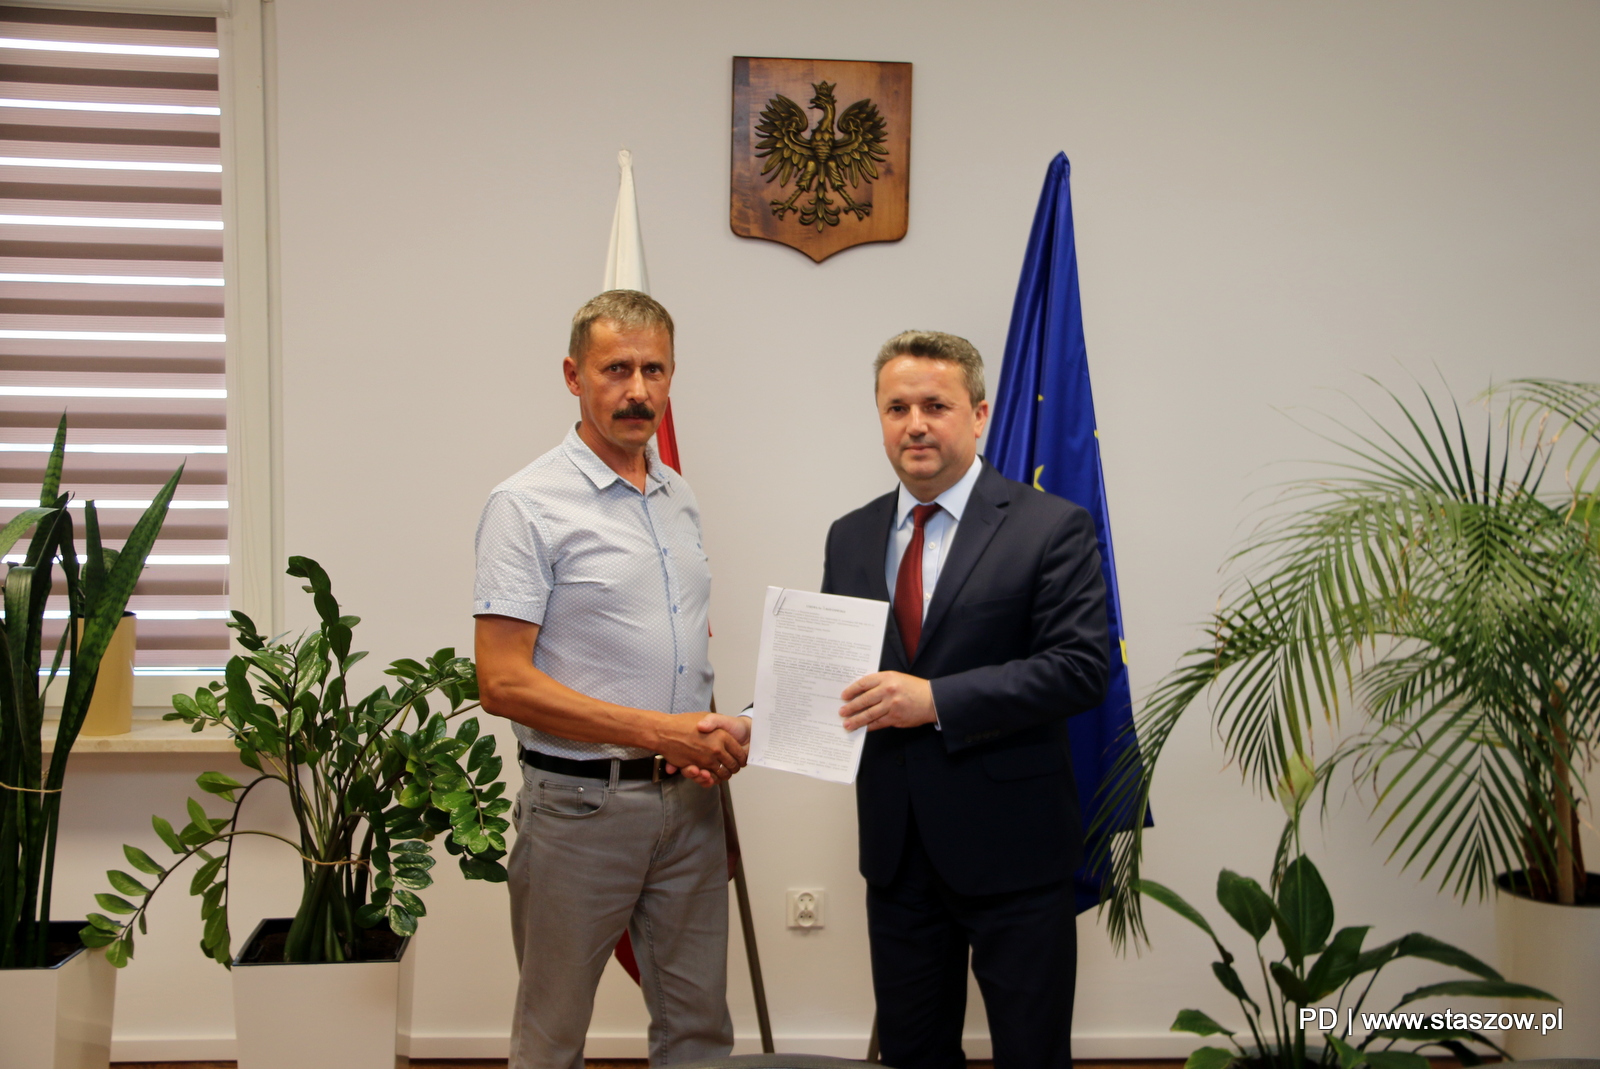 W staszowskim magistracie, w środę 7 lipca podpisano umowę na wykonanie przebudowy boiska do piłki nożnej w Wiązownicy-Kolonii.